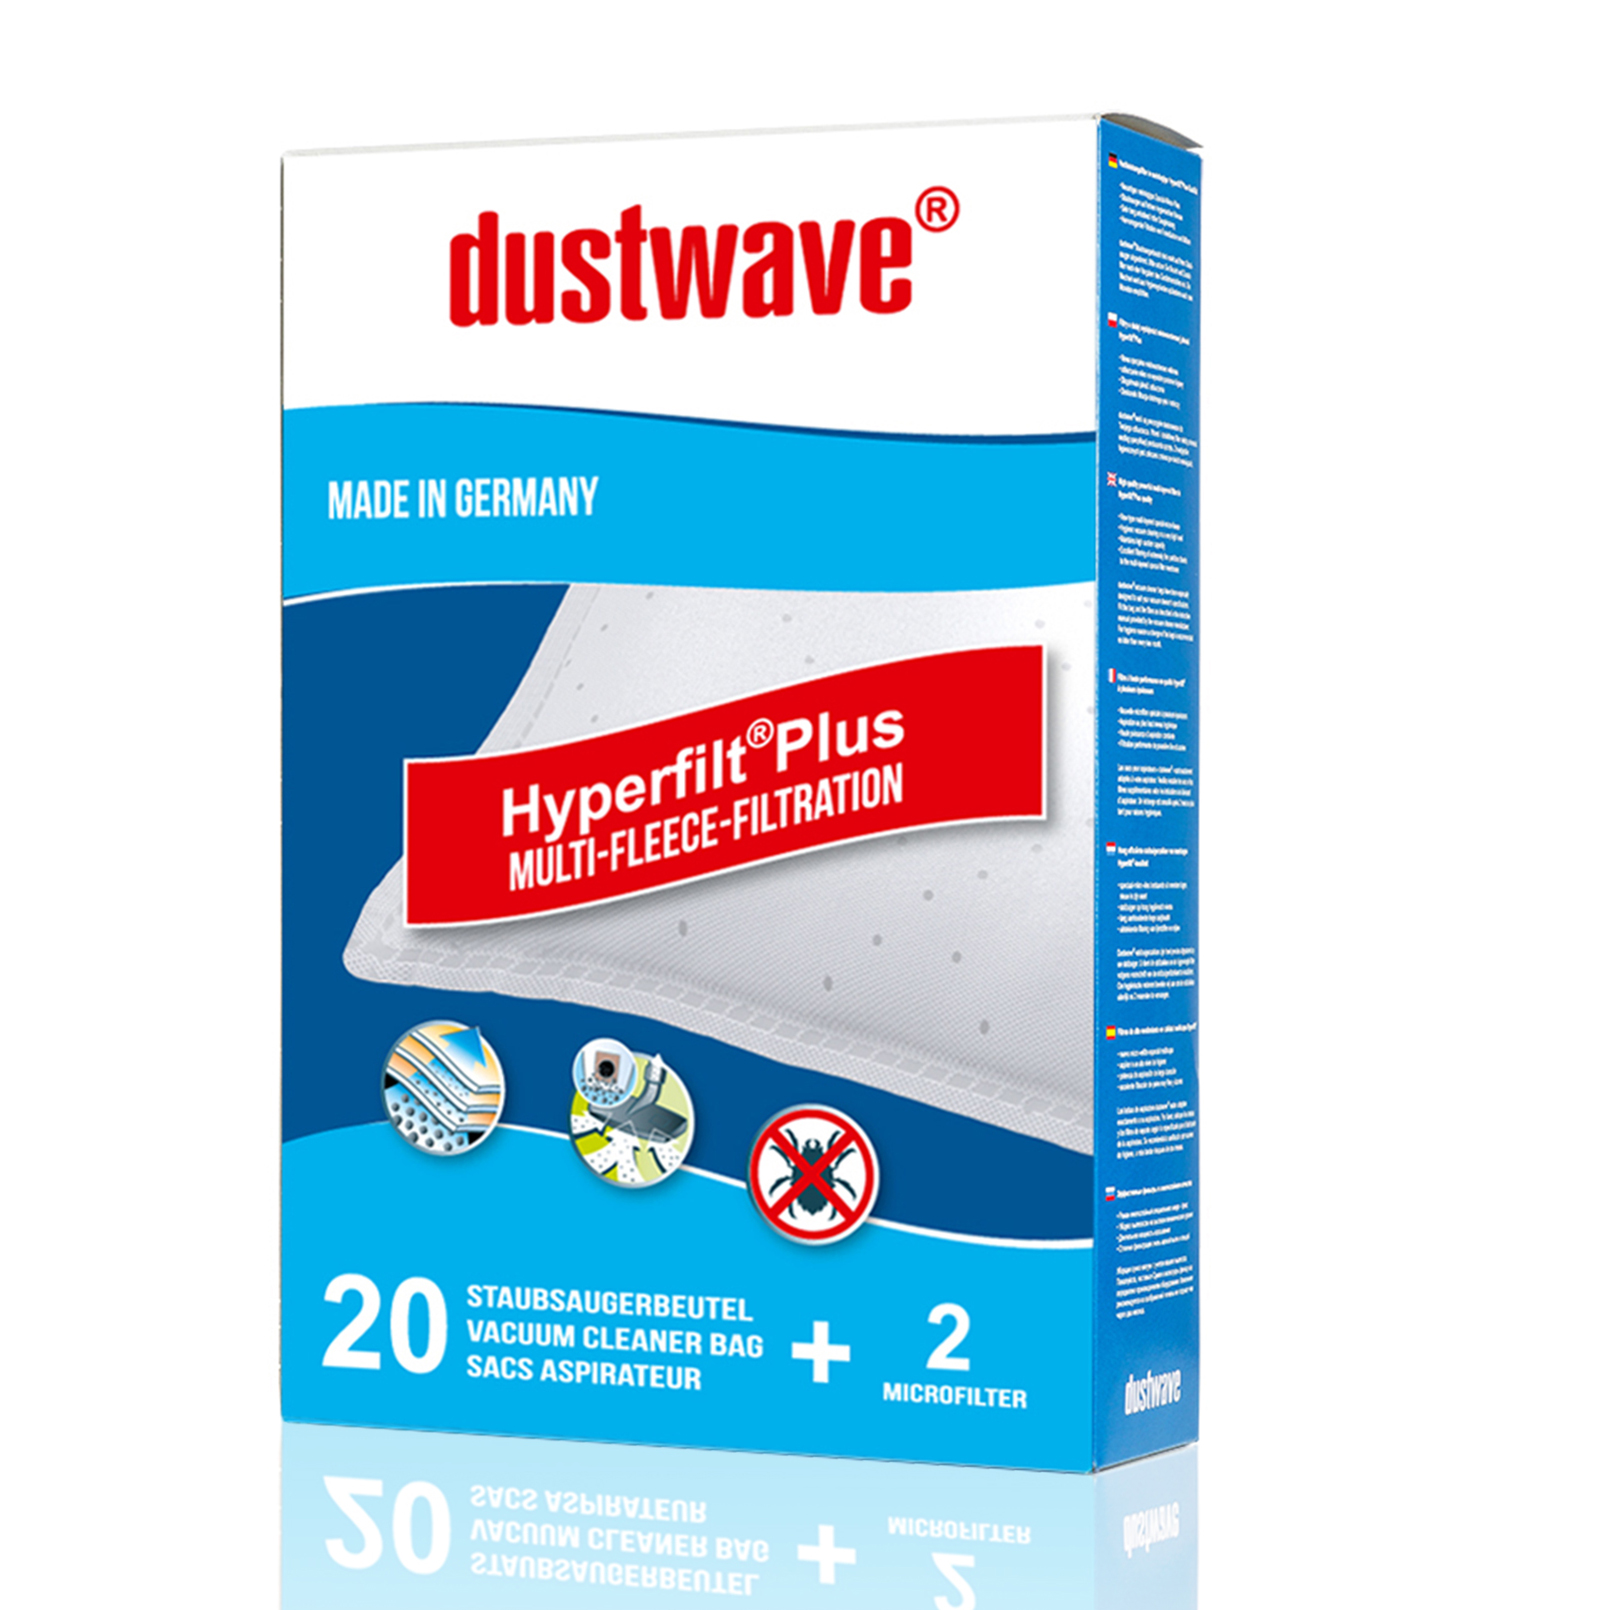 Dustwave® 5 Staubsaugerbeutel für Miele Europa - hocheffizient, mehrlagiges Mikrovlies mit Hygieneverschluss - Made in Germany